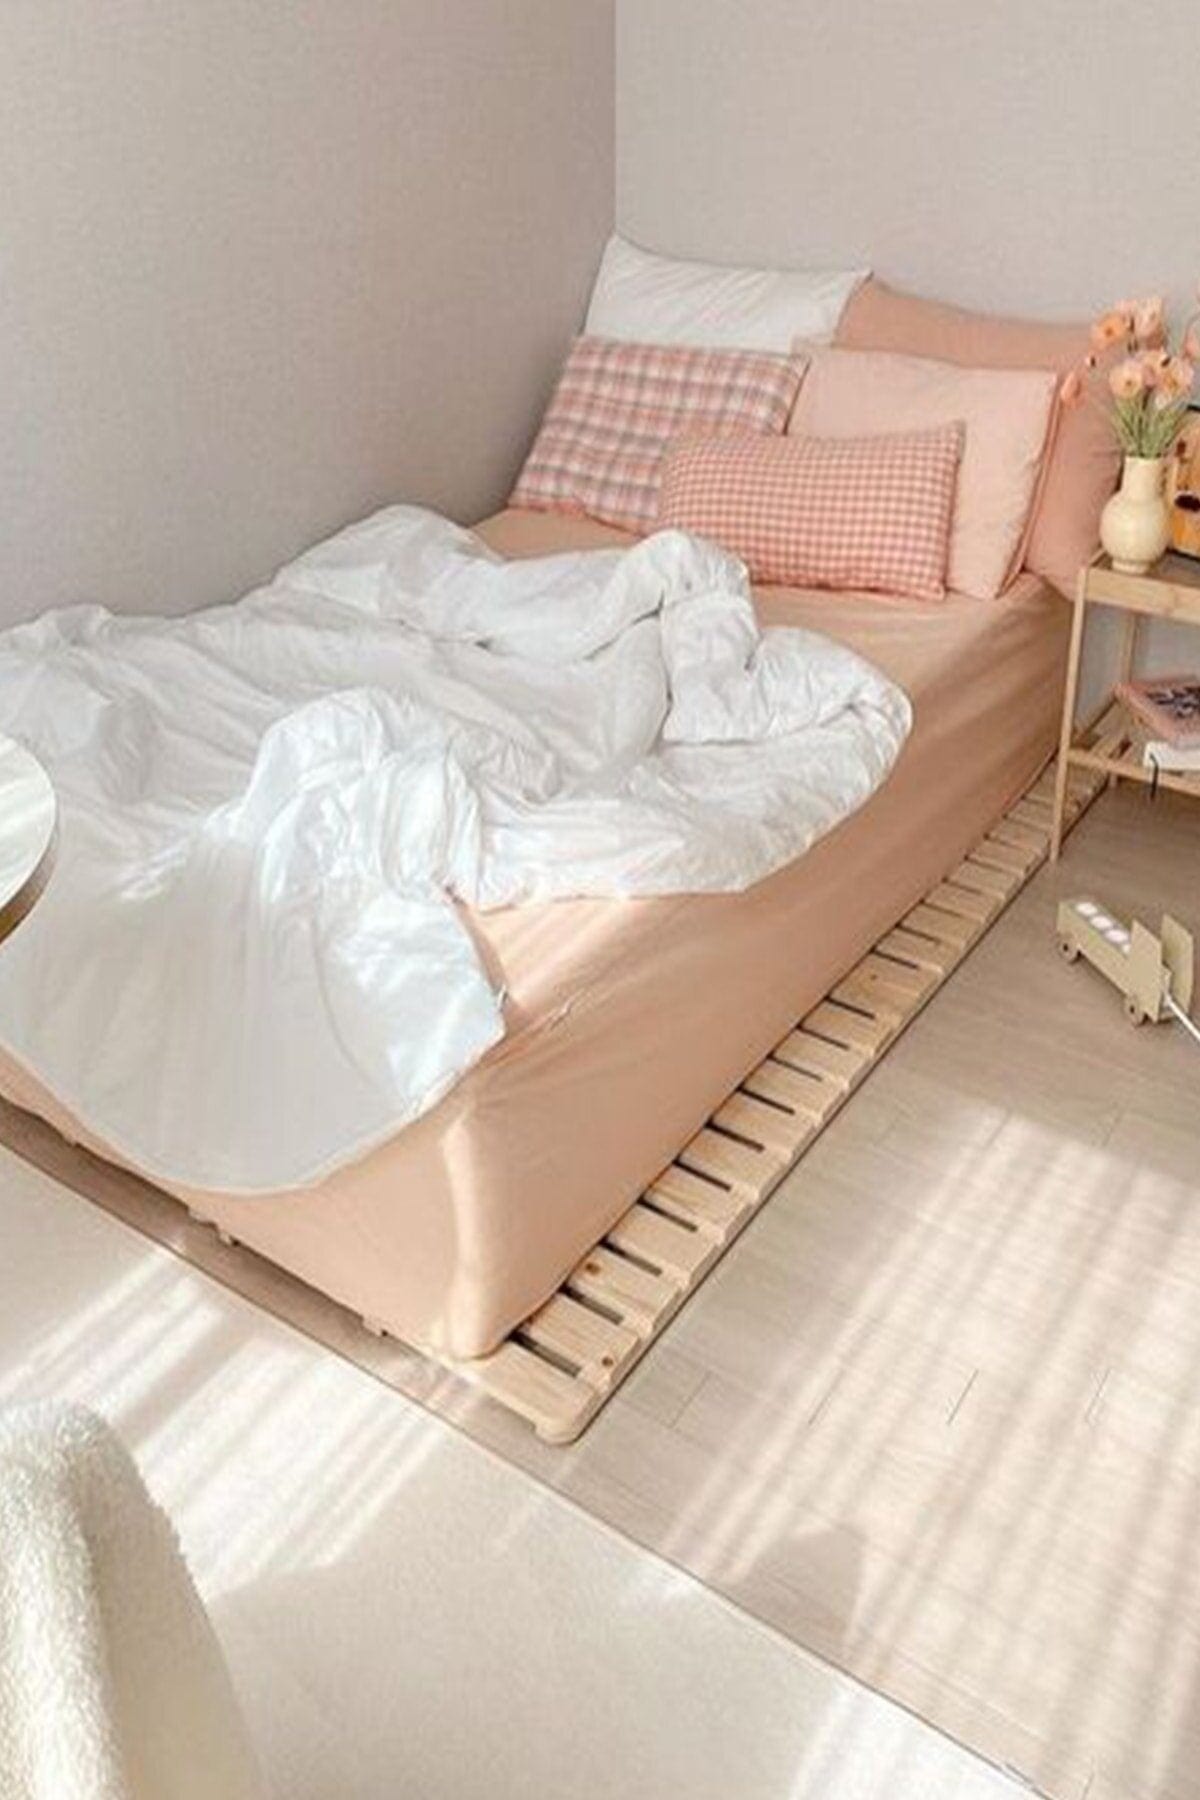 Loolpi Home Japon Yer Yatağı Japon Model Doğal Ahşap Karyola Yer Yatağı Tek Ve Çift Kişilik Tüm Ölçülerde